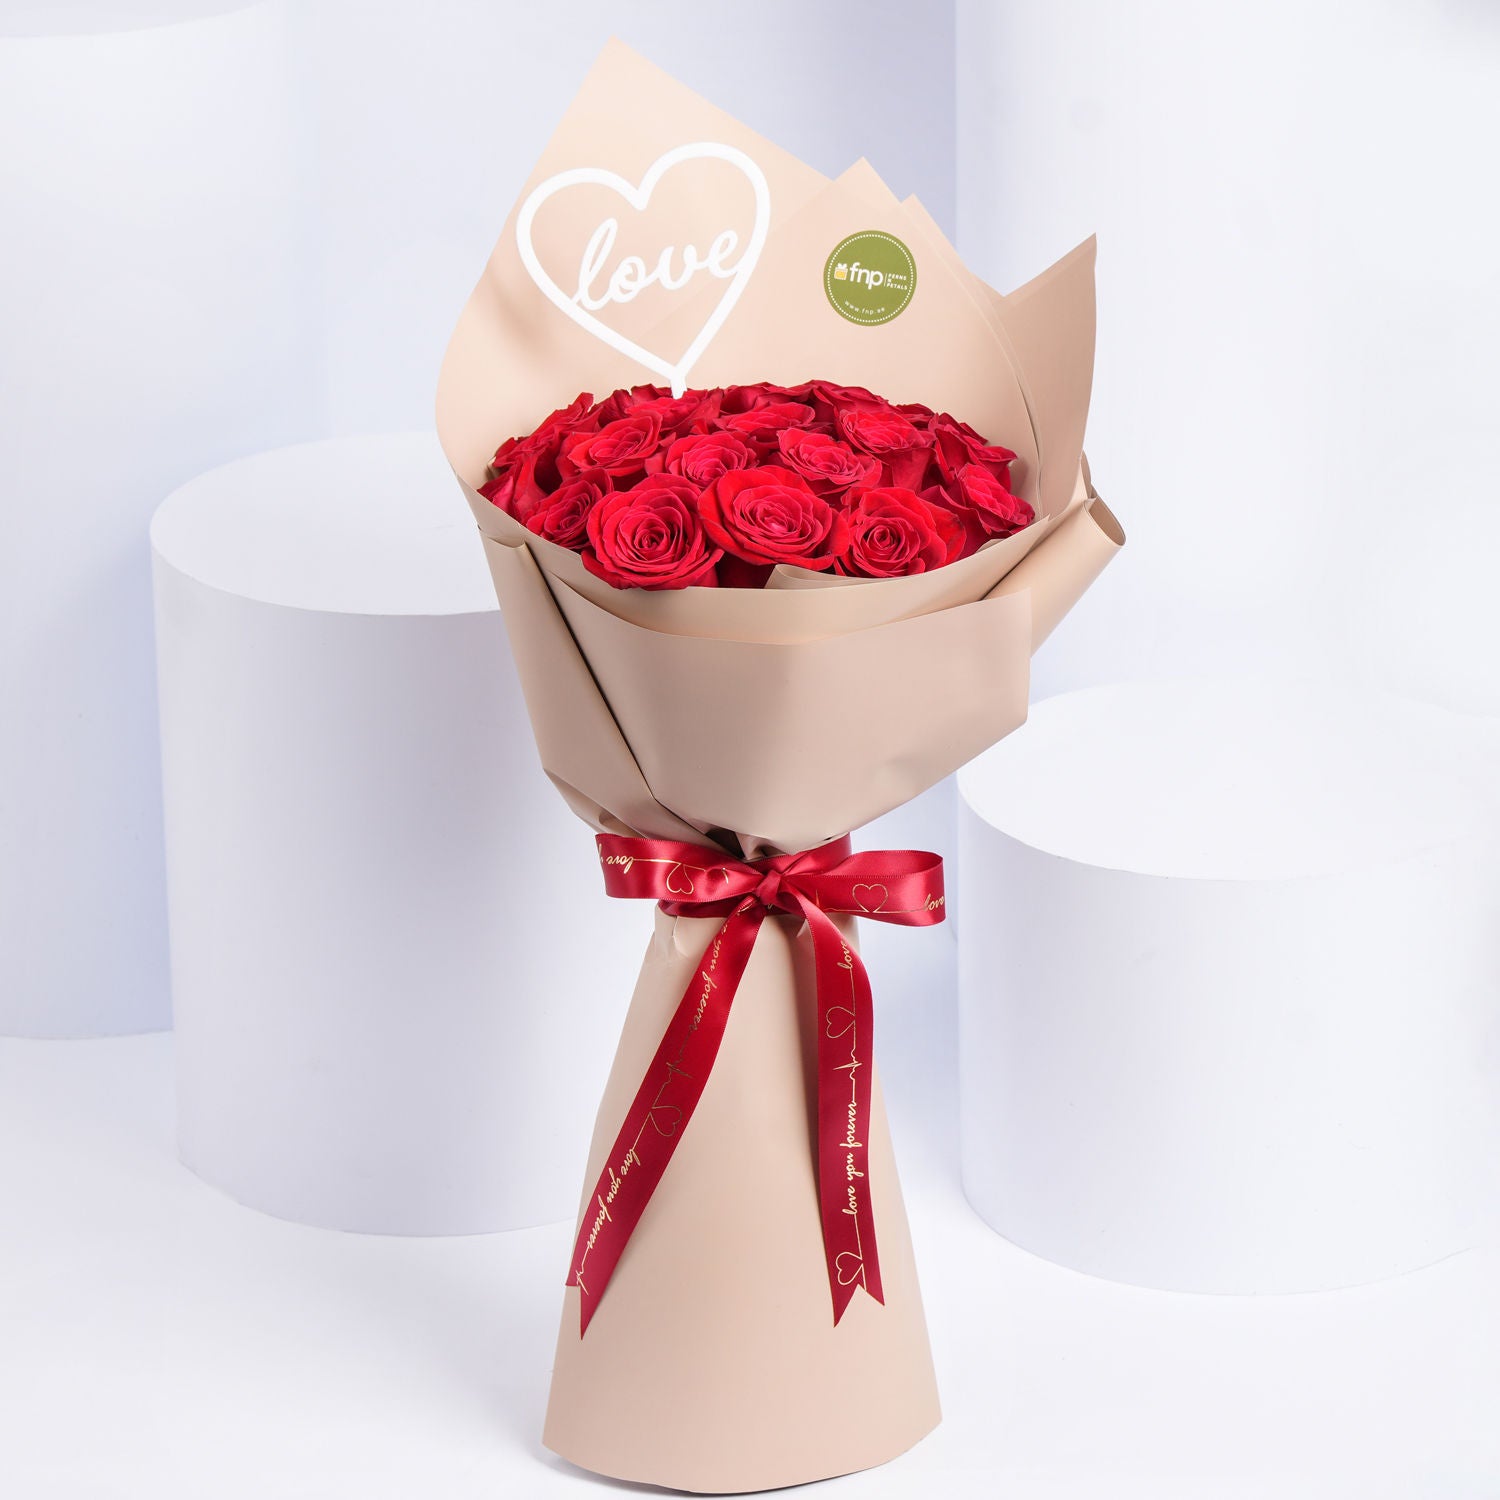 باقة 20 وردة جوري أحمر في غلاف بيج فاخر - هدية أنيقة